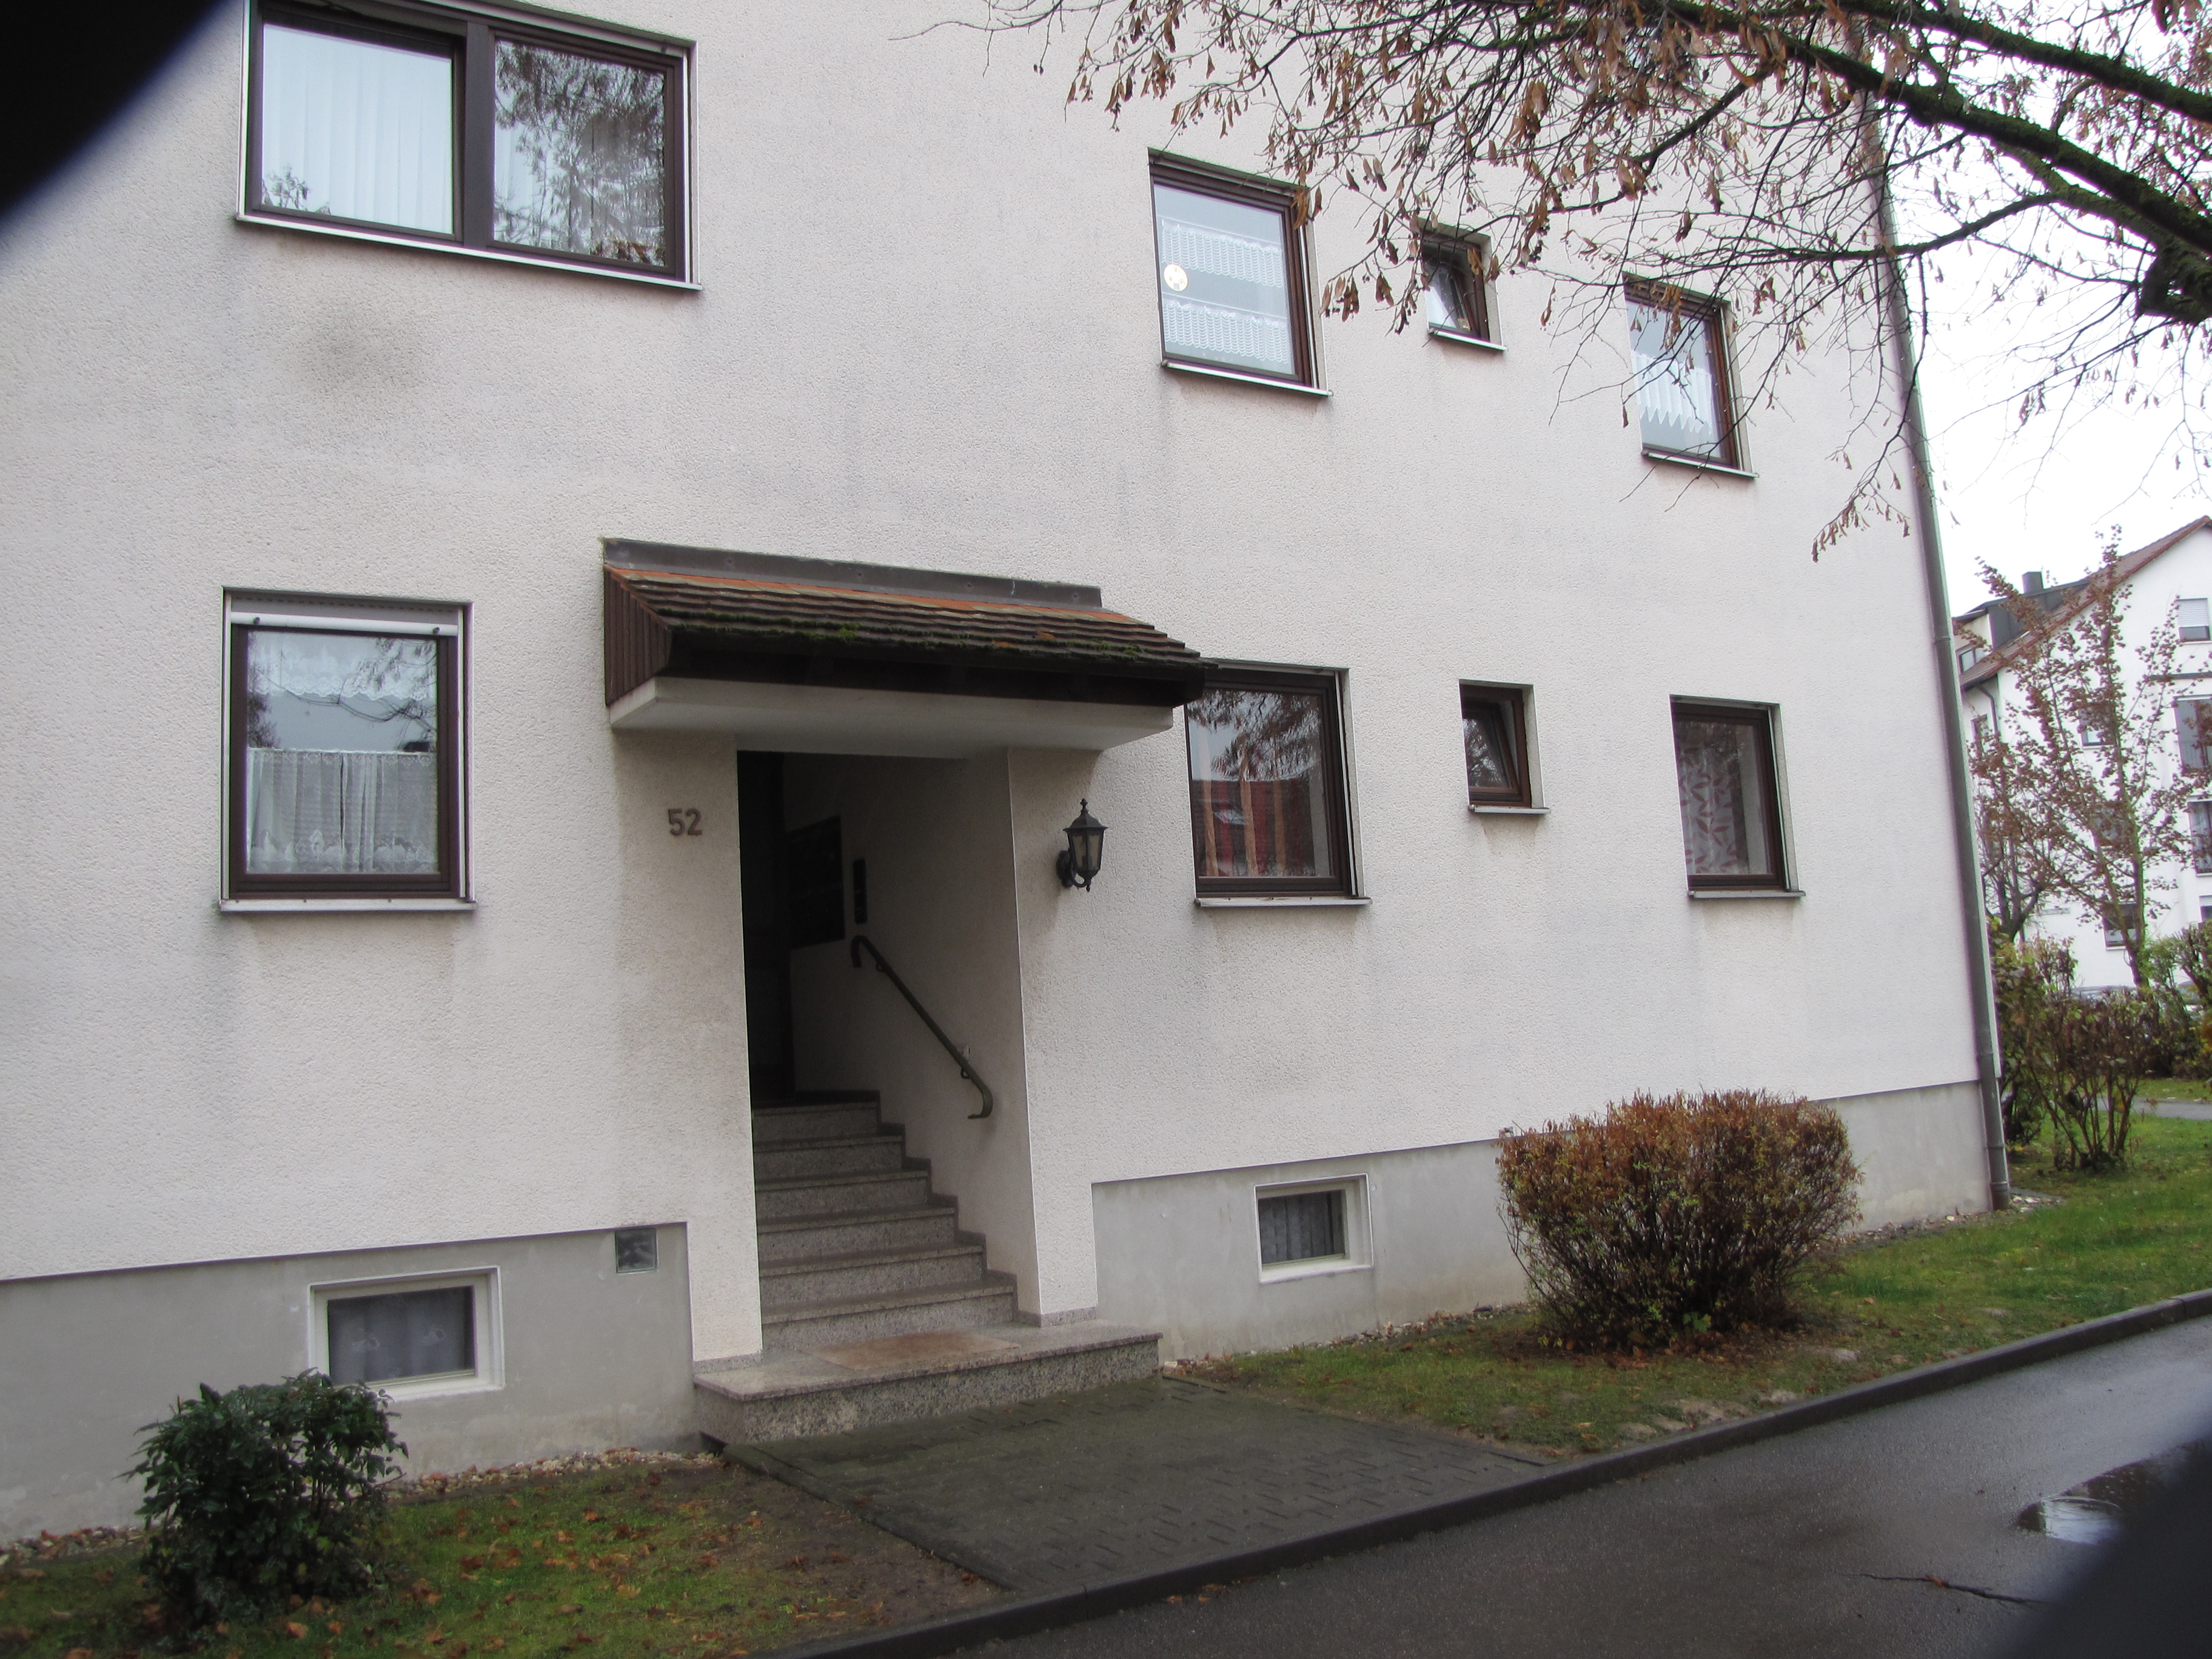 3 Zimmer Etw In Nordlingen Verkauft Immobilien Reich